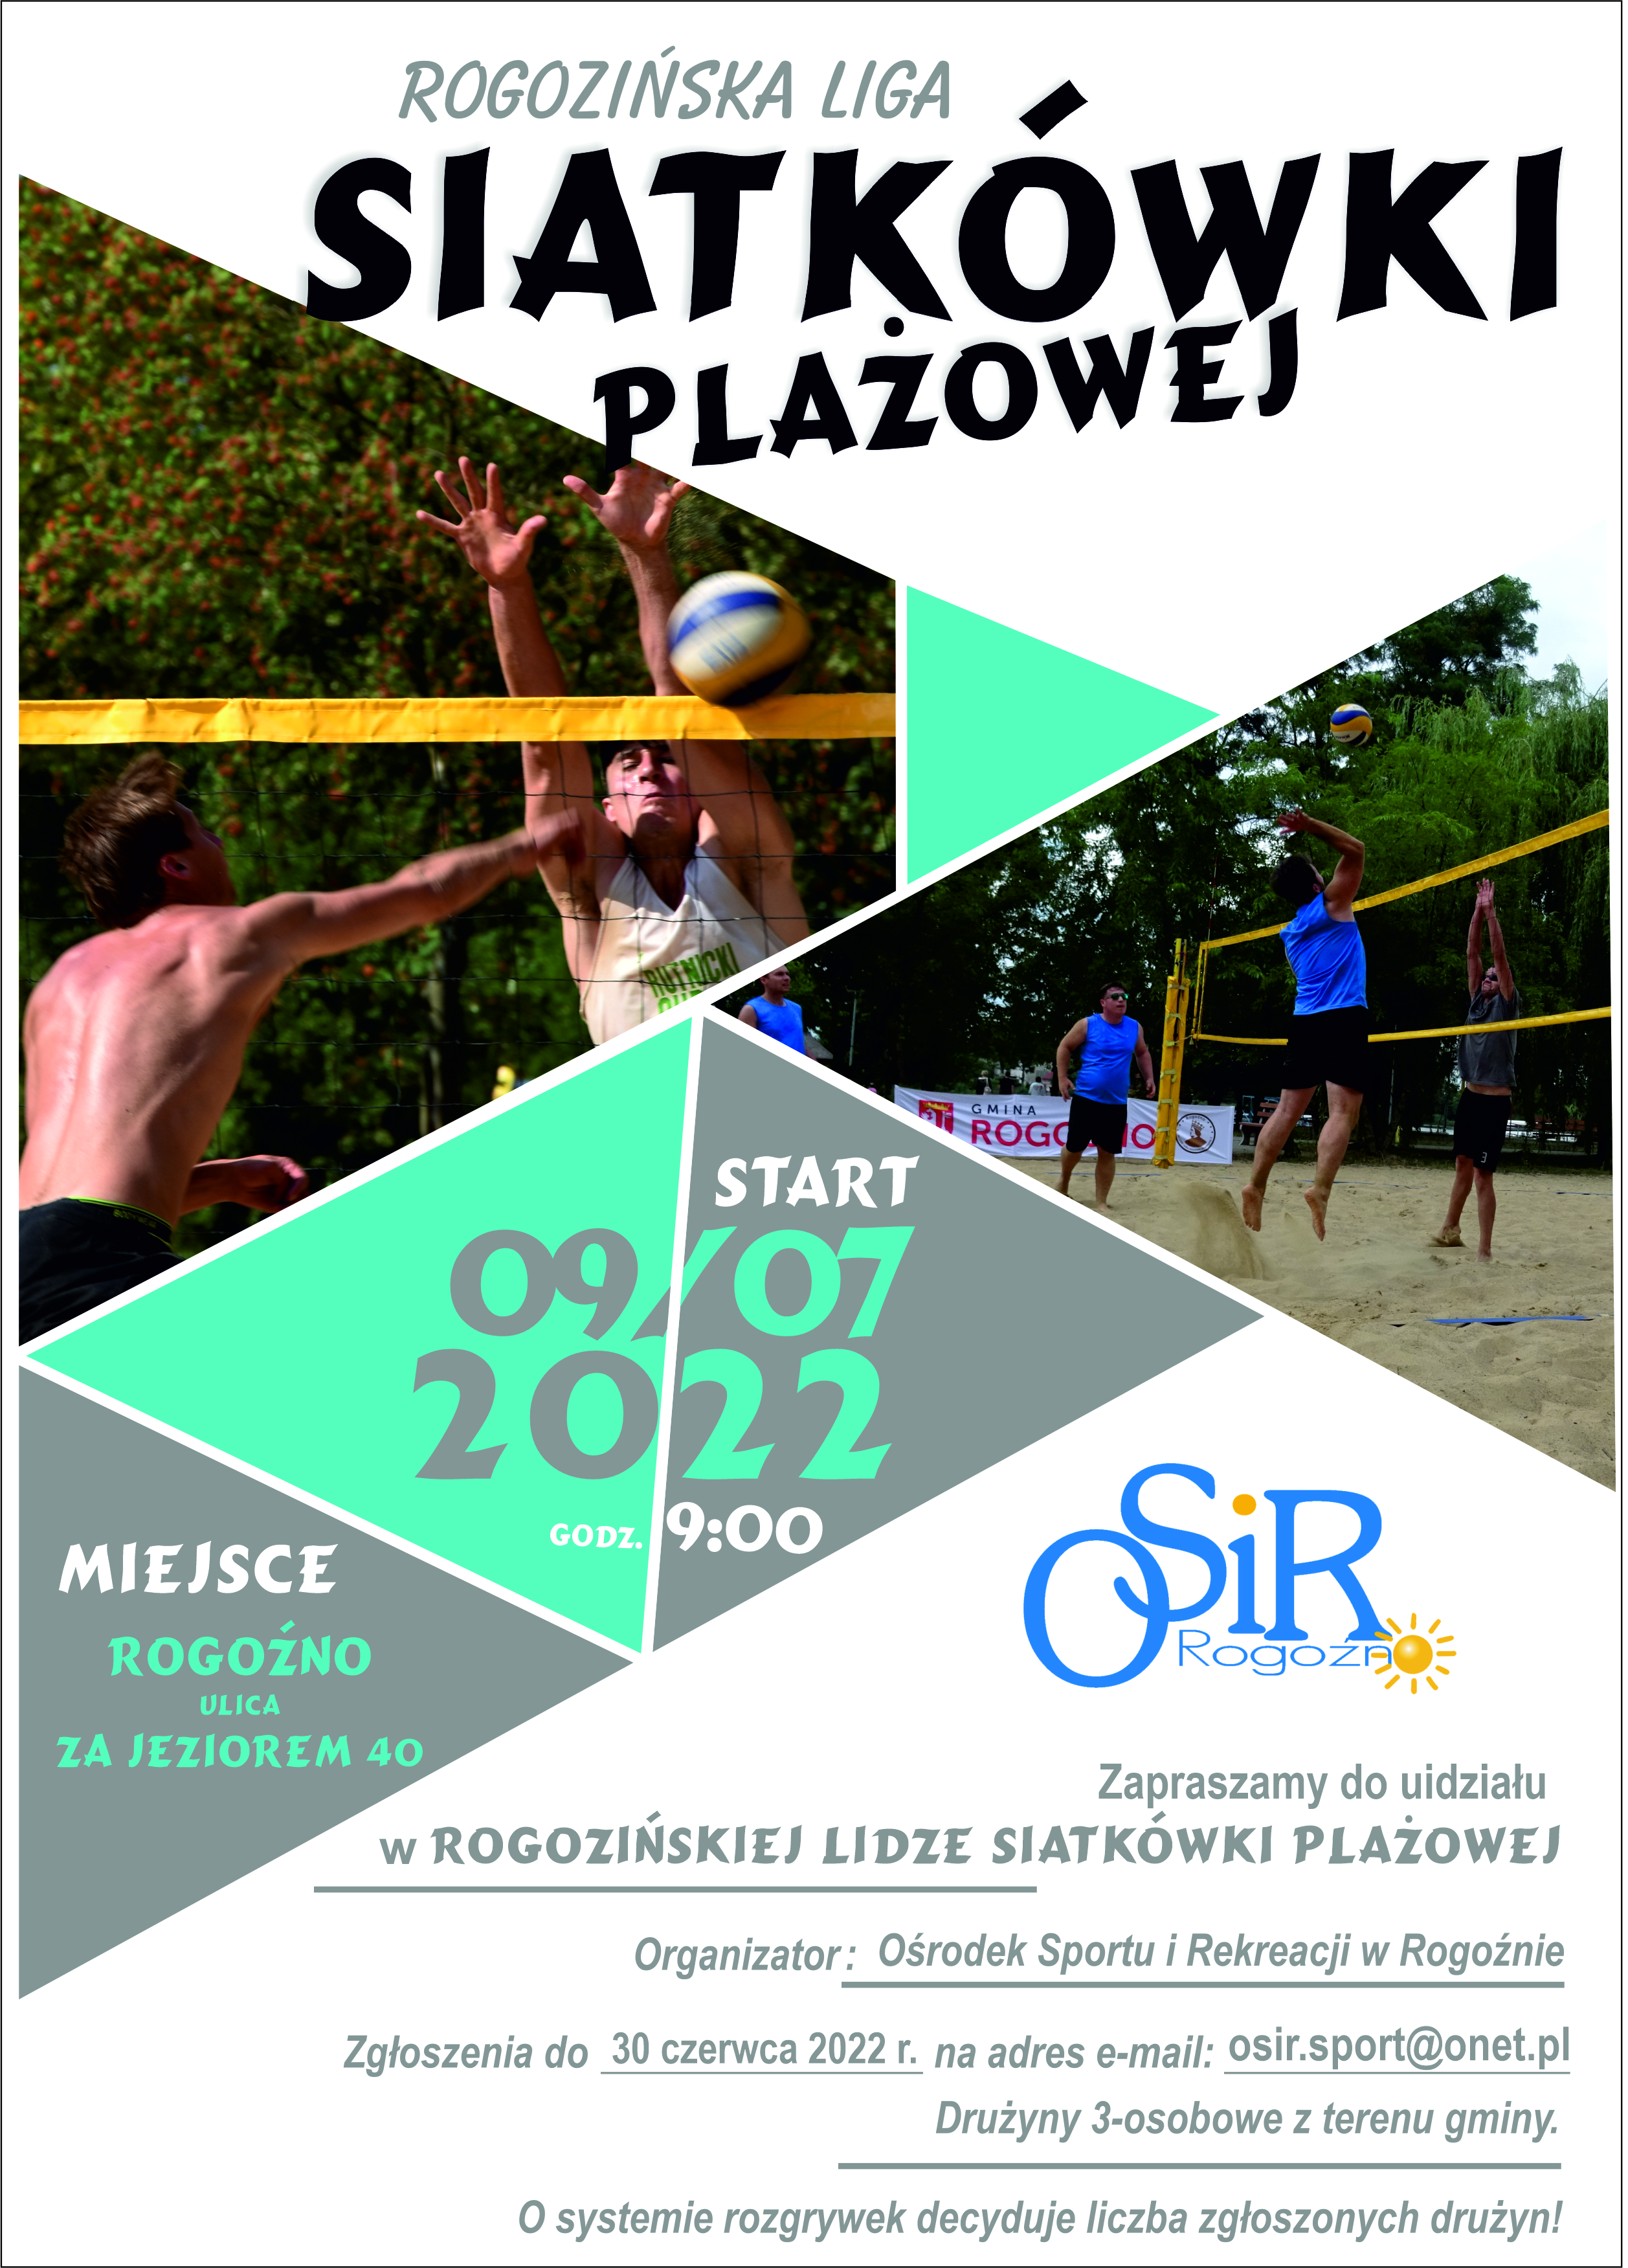 plakat informujący o rozgrywkach rogozińskiej ligi siatkówki plażowejj